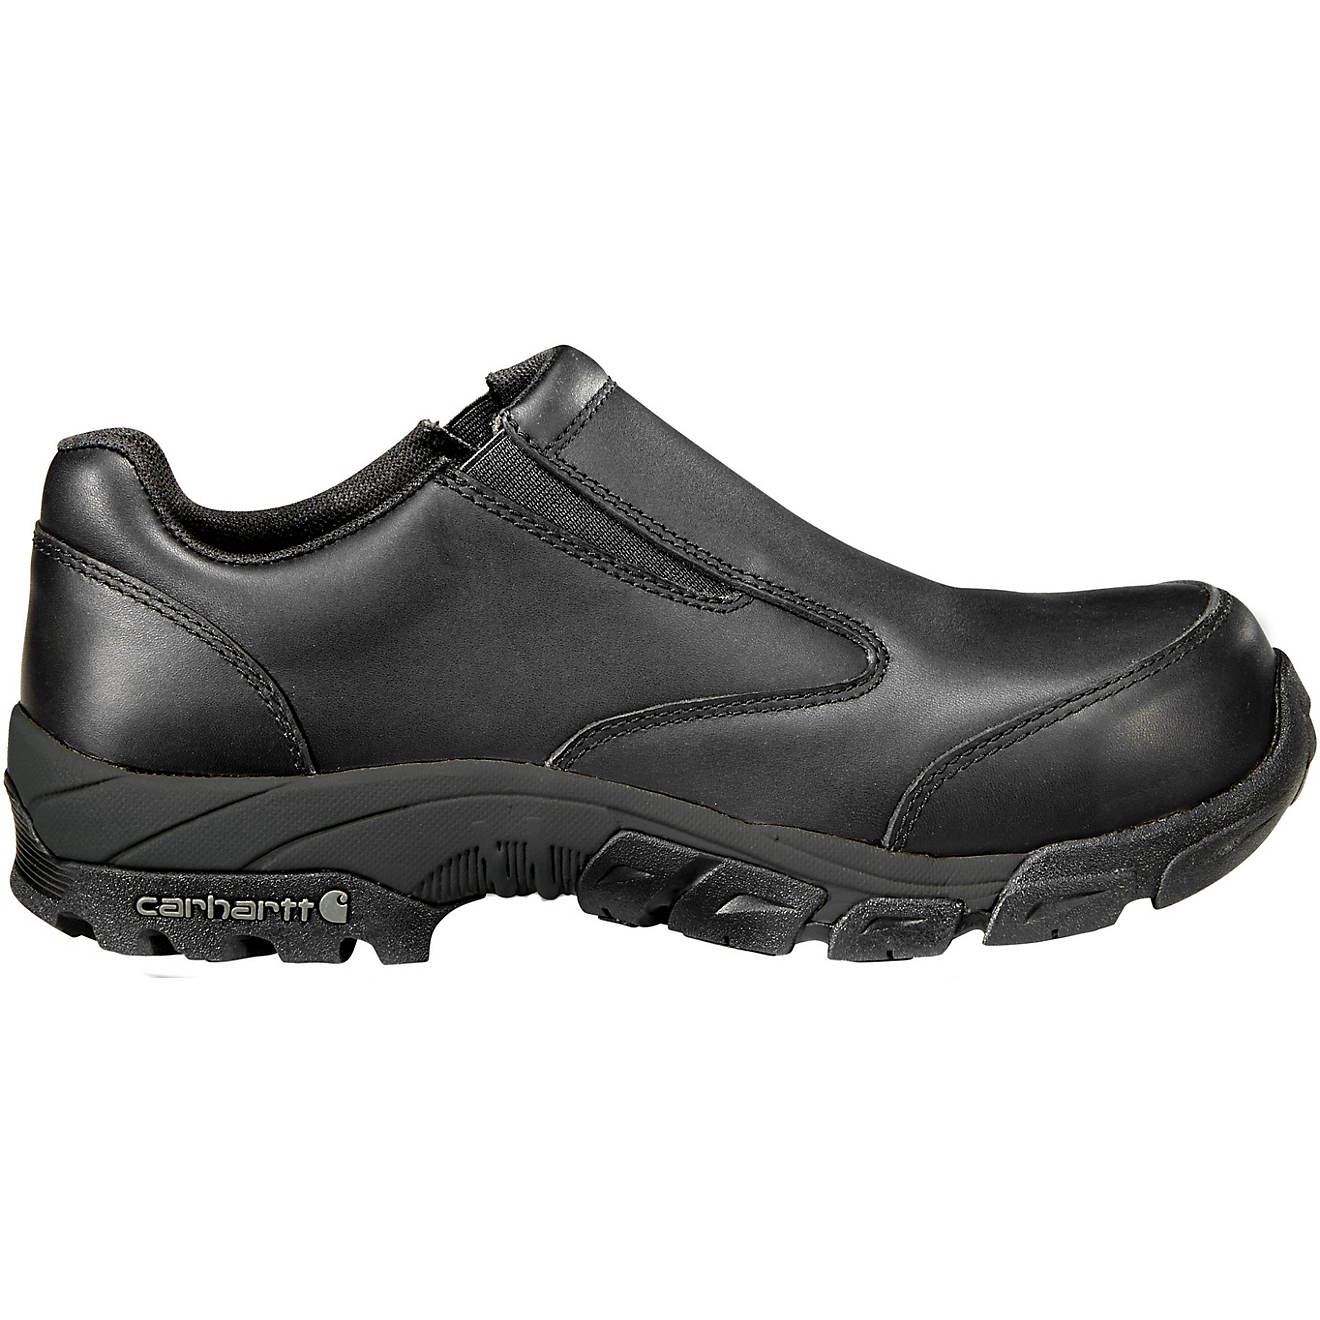 Carhartt Men's Lightweight Insite Hiking Shoes | Academy